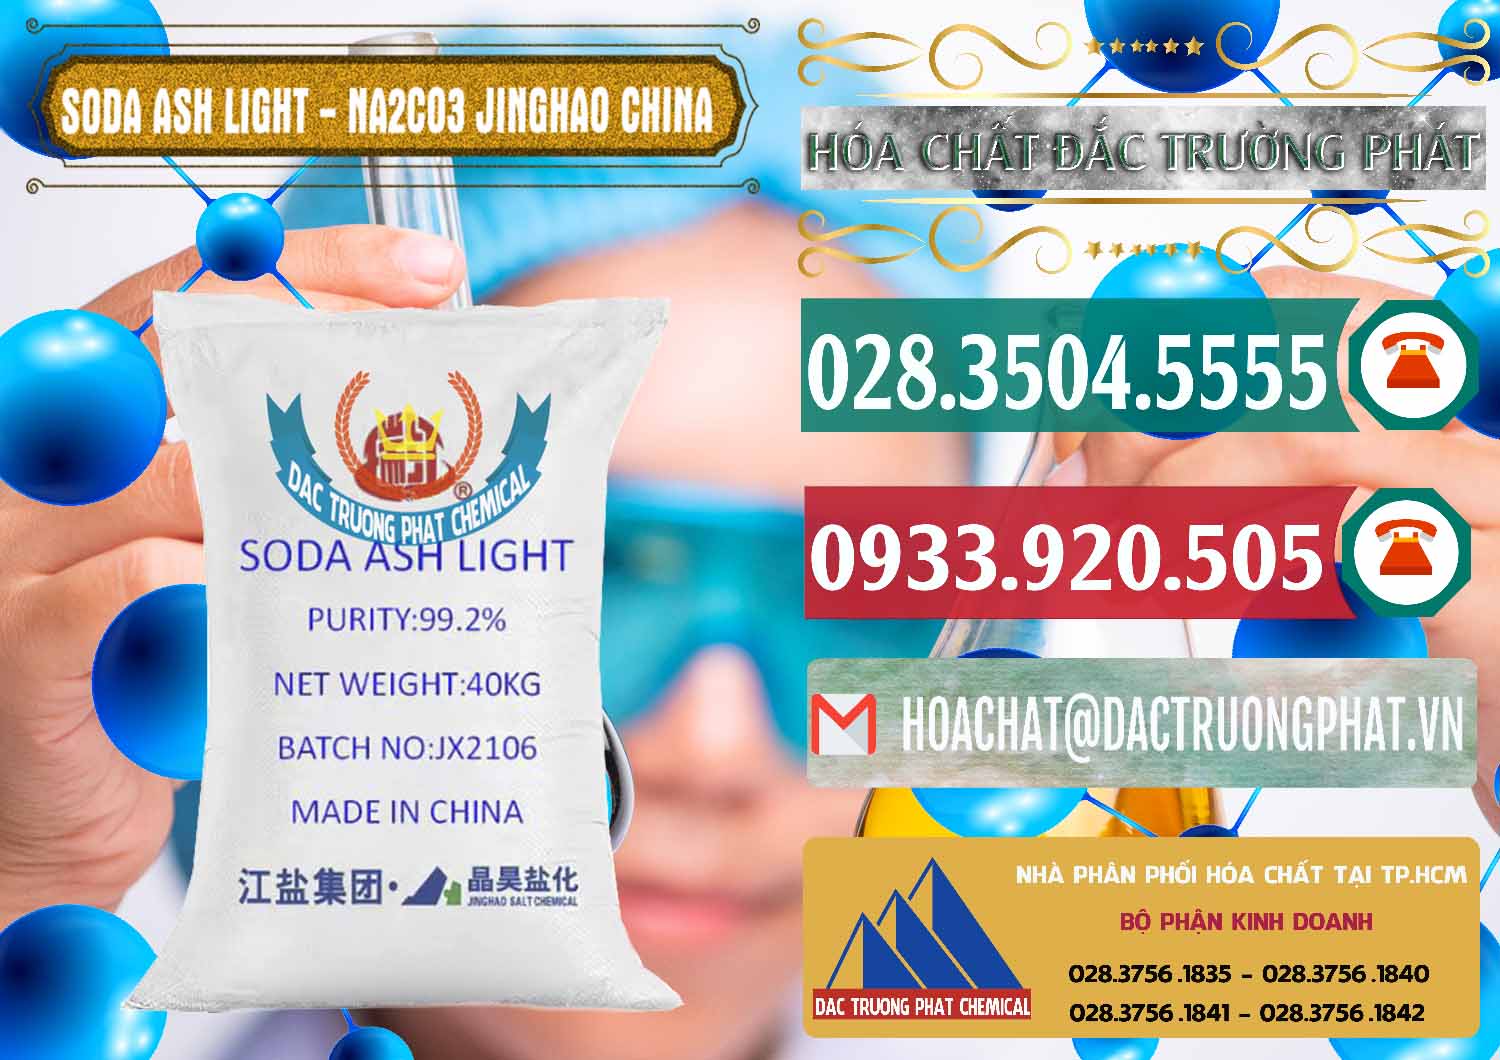 Cty chuyên bán và phân phối Soda Ash Light - NA2CO3 Jinghao Trung Quốc China - 0339 - Đơn vị chuyên cung cấp & bán hóa chất tại TP.HCM - muabanhoachat.vn